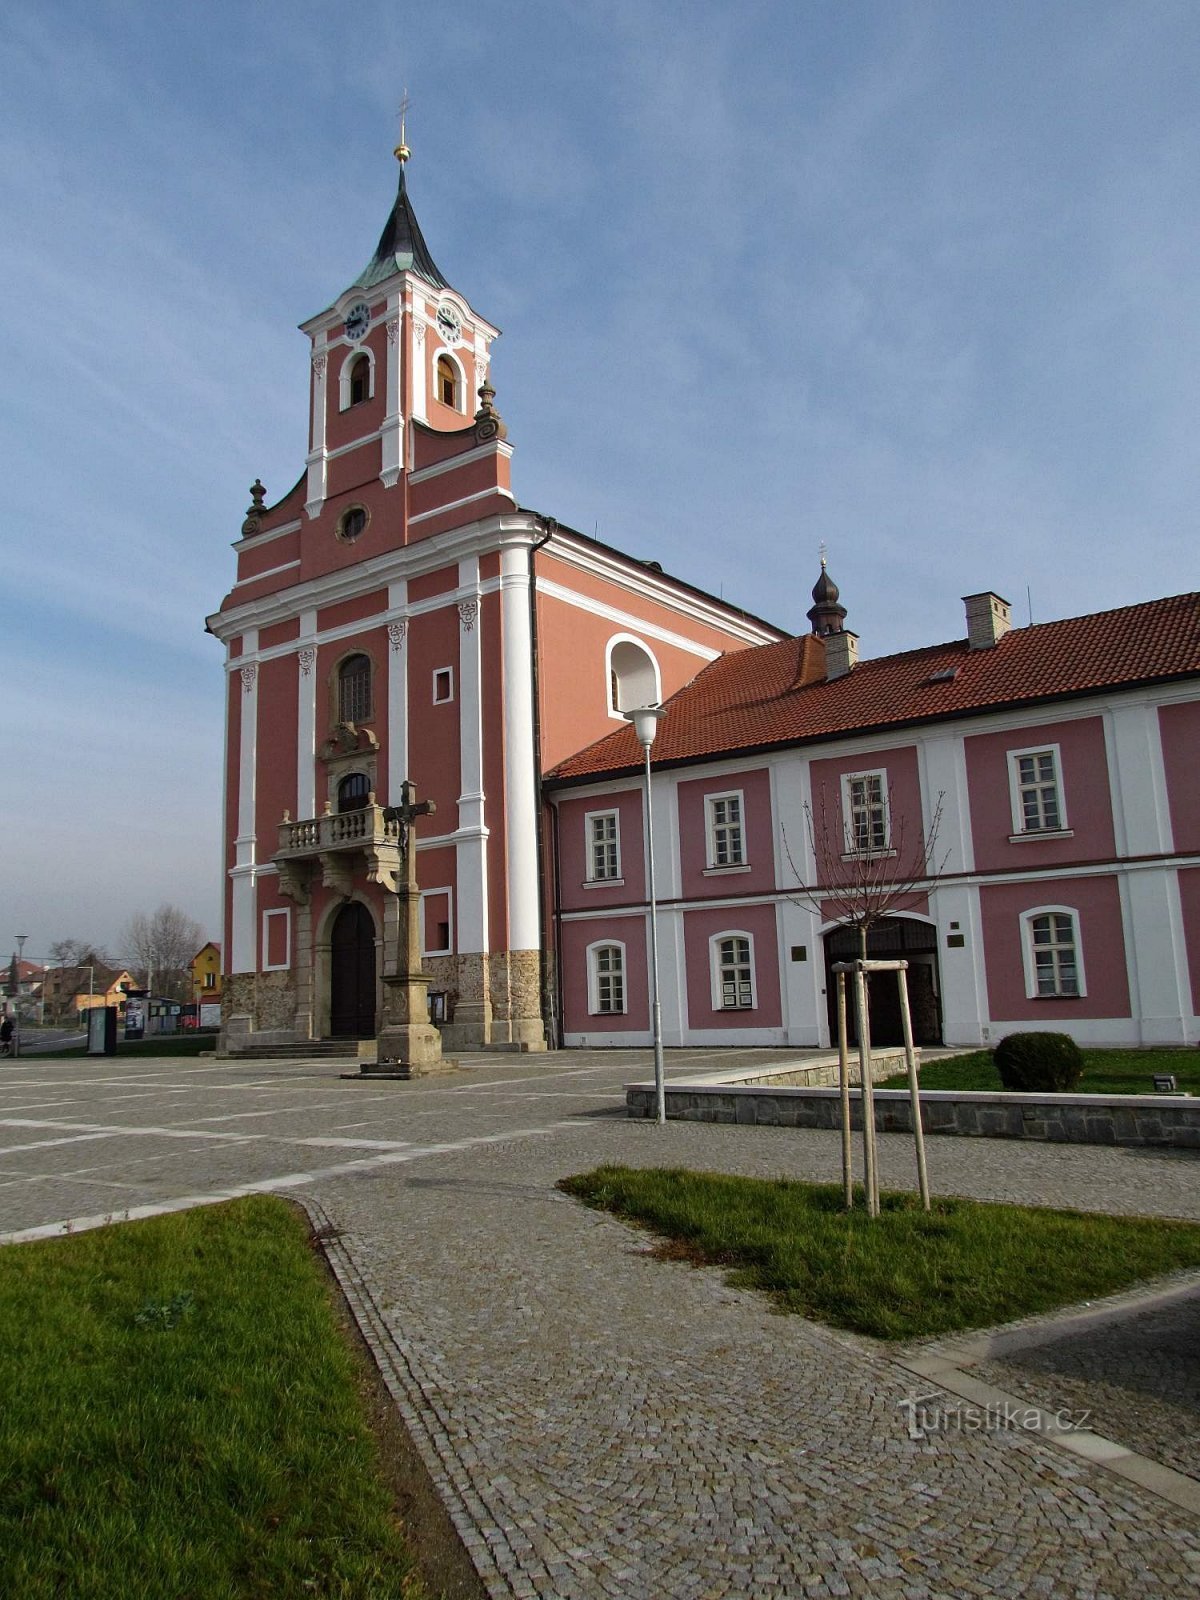 Mariánské náměstí in Štípa near Zlín